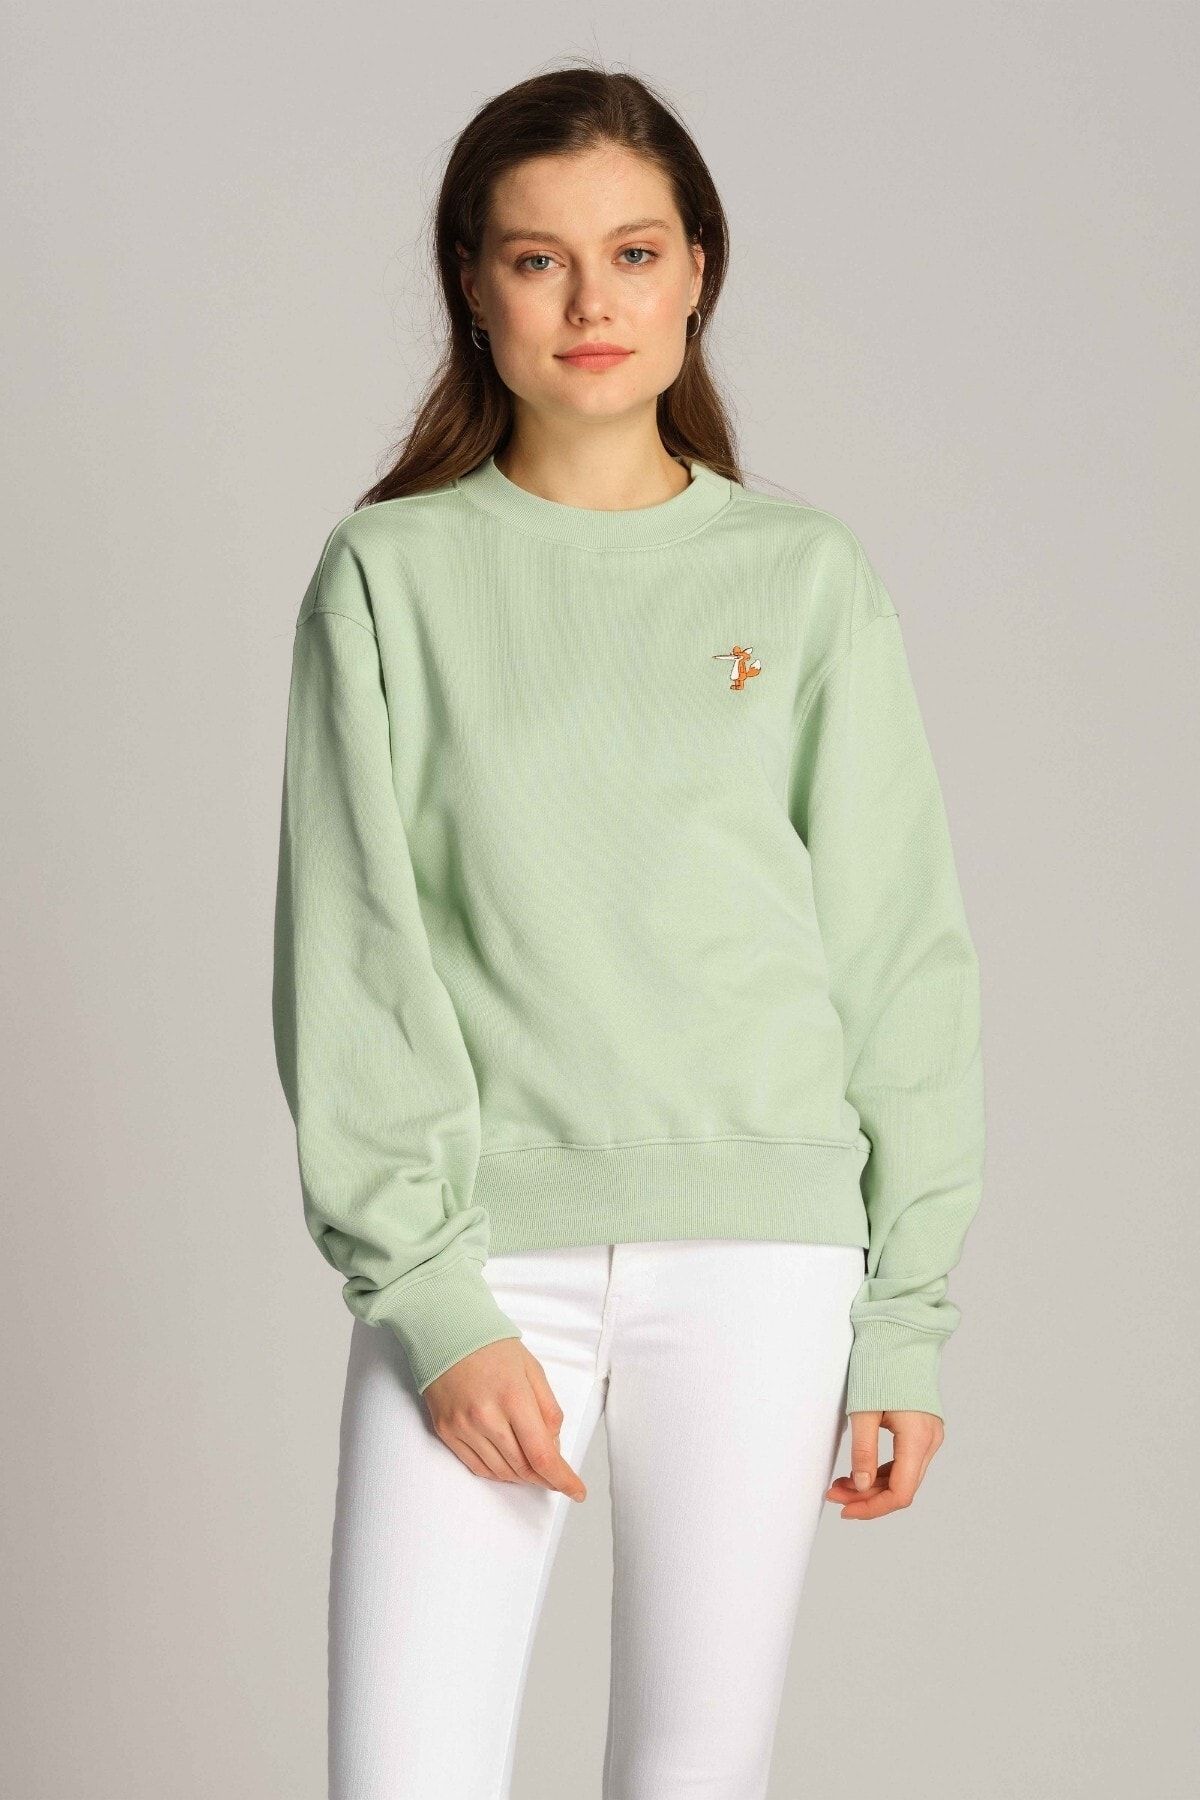 Ruck & Maul Kadın Sweatshirt 23612 631 - Cameo Green